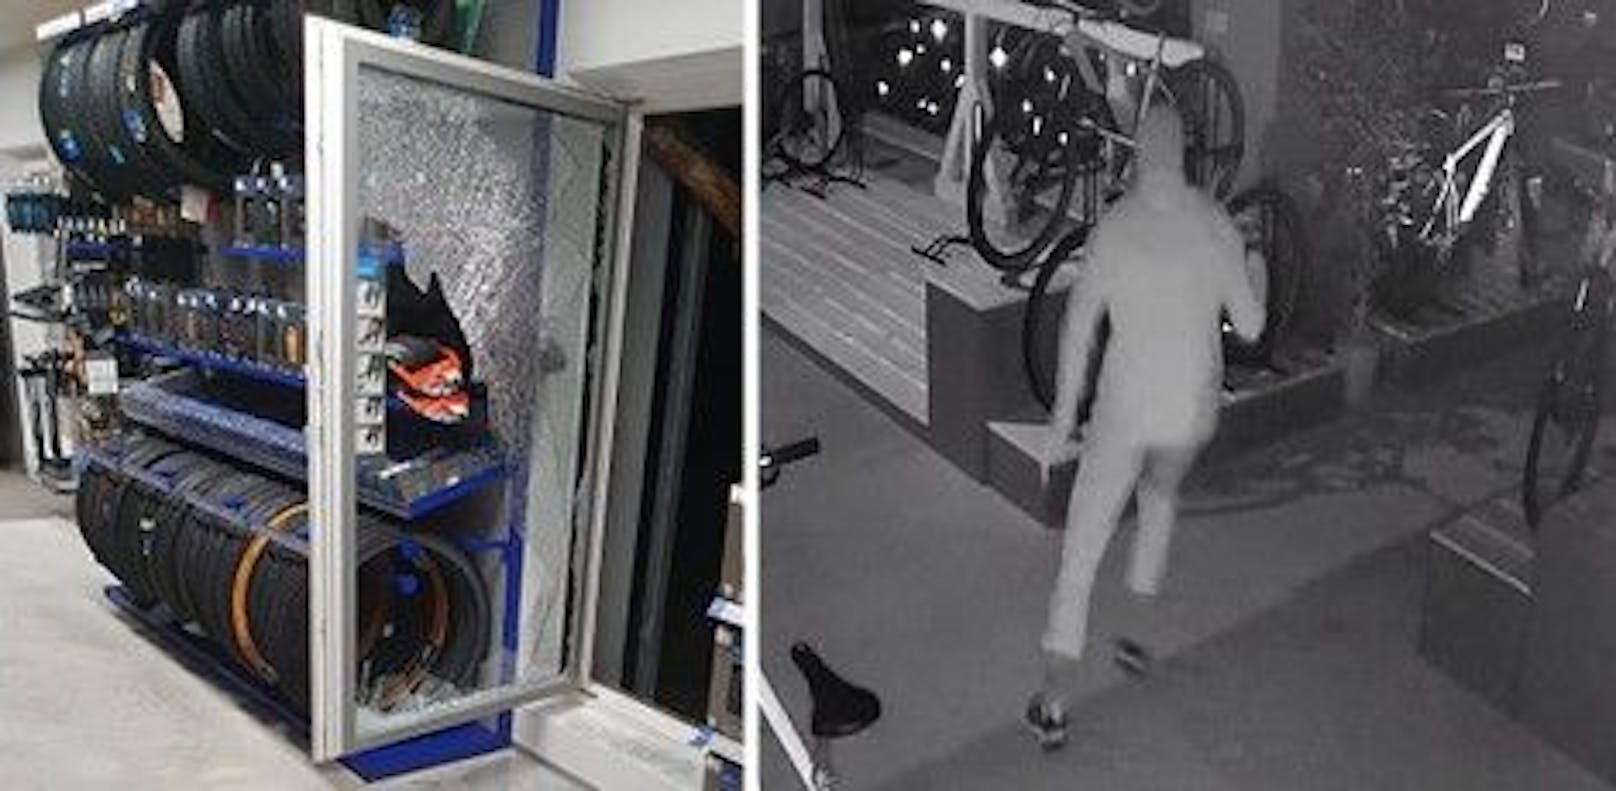 Die Kamerabilder zeigen den Einbrecher im Geschäft von Jürgen Horny. Er hatte mit einem Pflock ein Fenster eingeschlagen (links), verschaffte sich so Zutritt in den Laden.